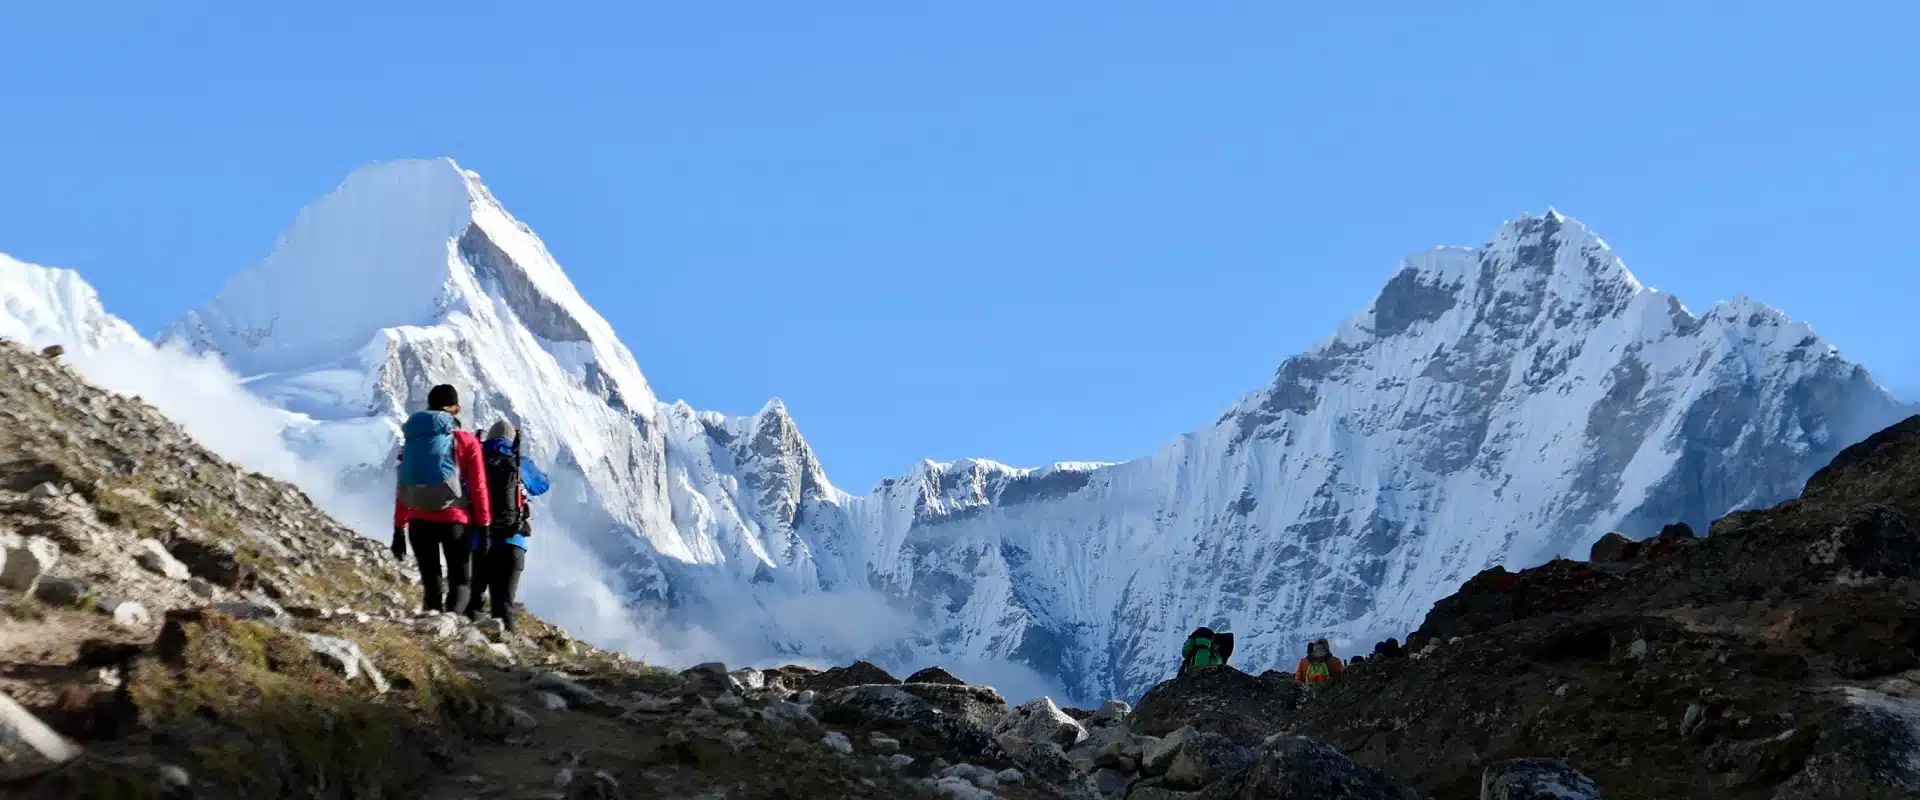 70 Best Tips for the Everest Base Camp Trek